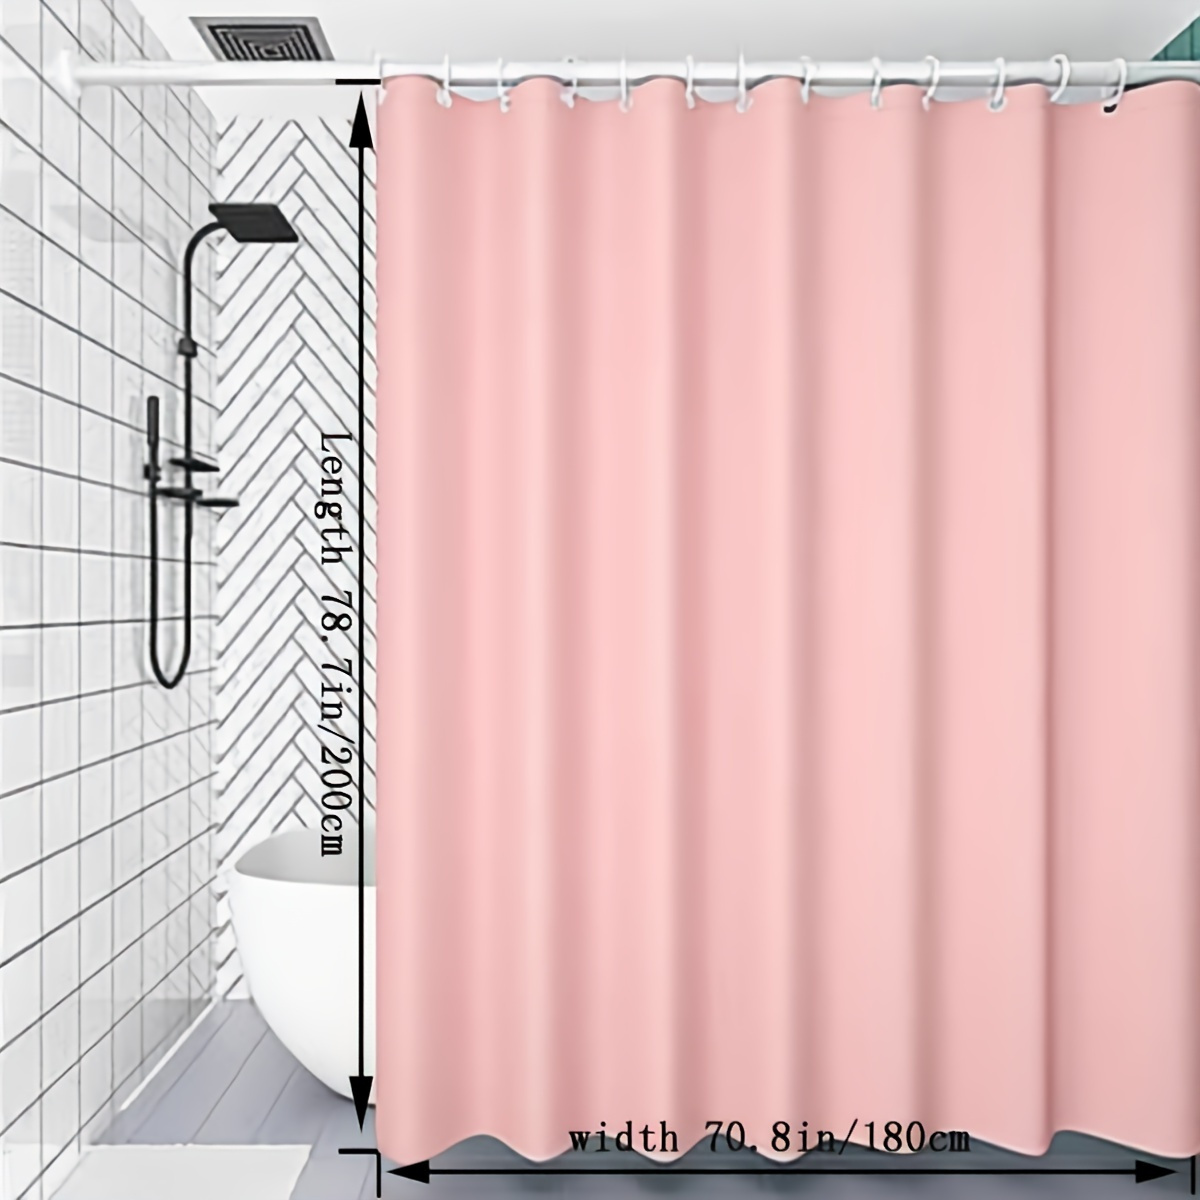 1pc Rideau de douche rose pour baignoire, crochets sécurisés en